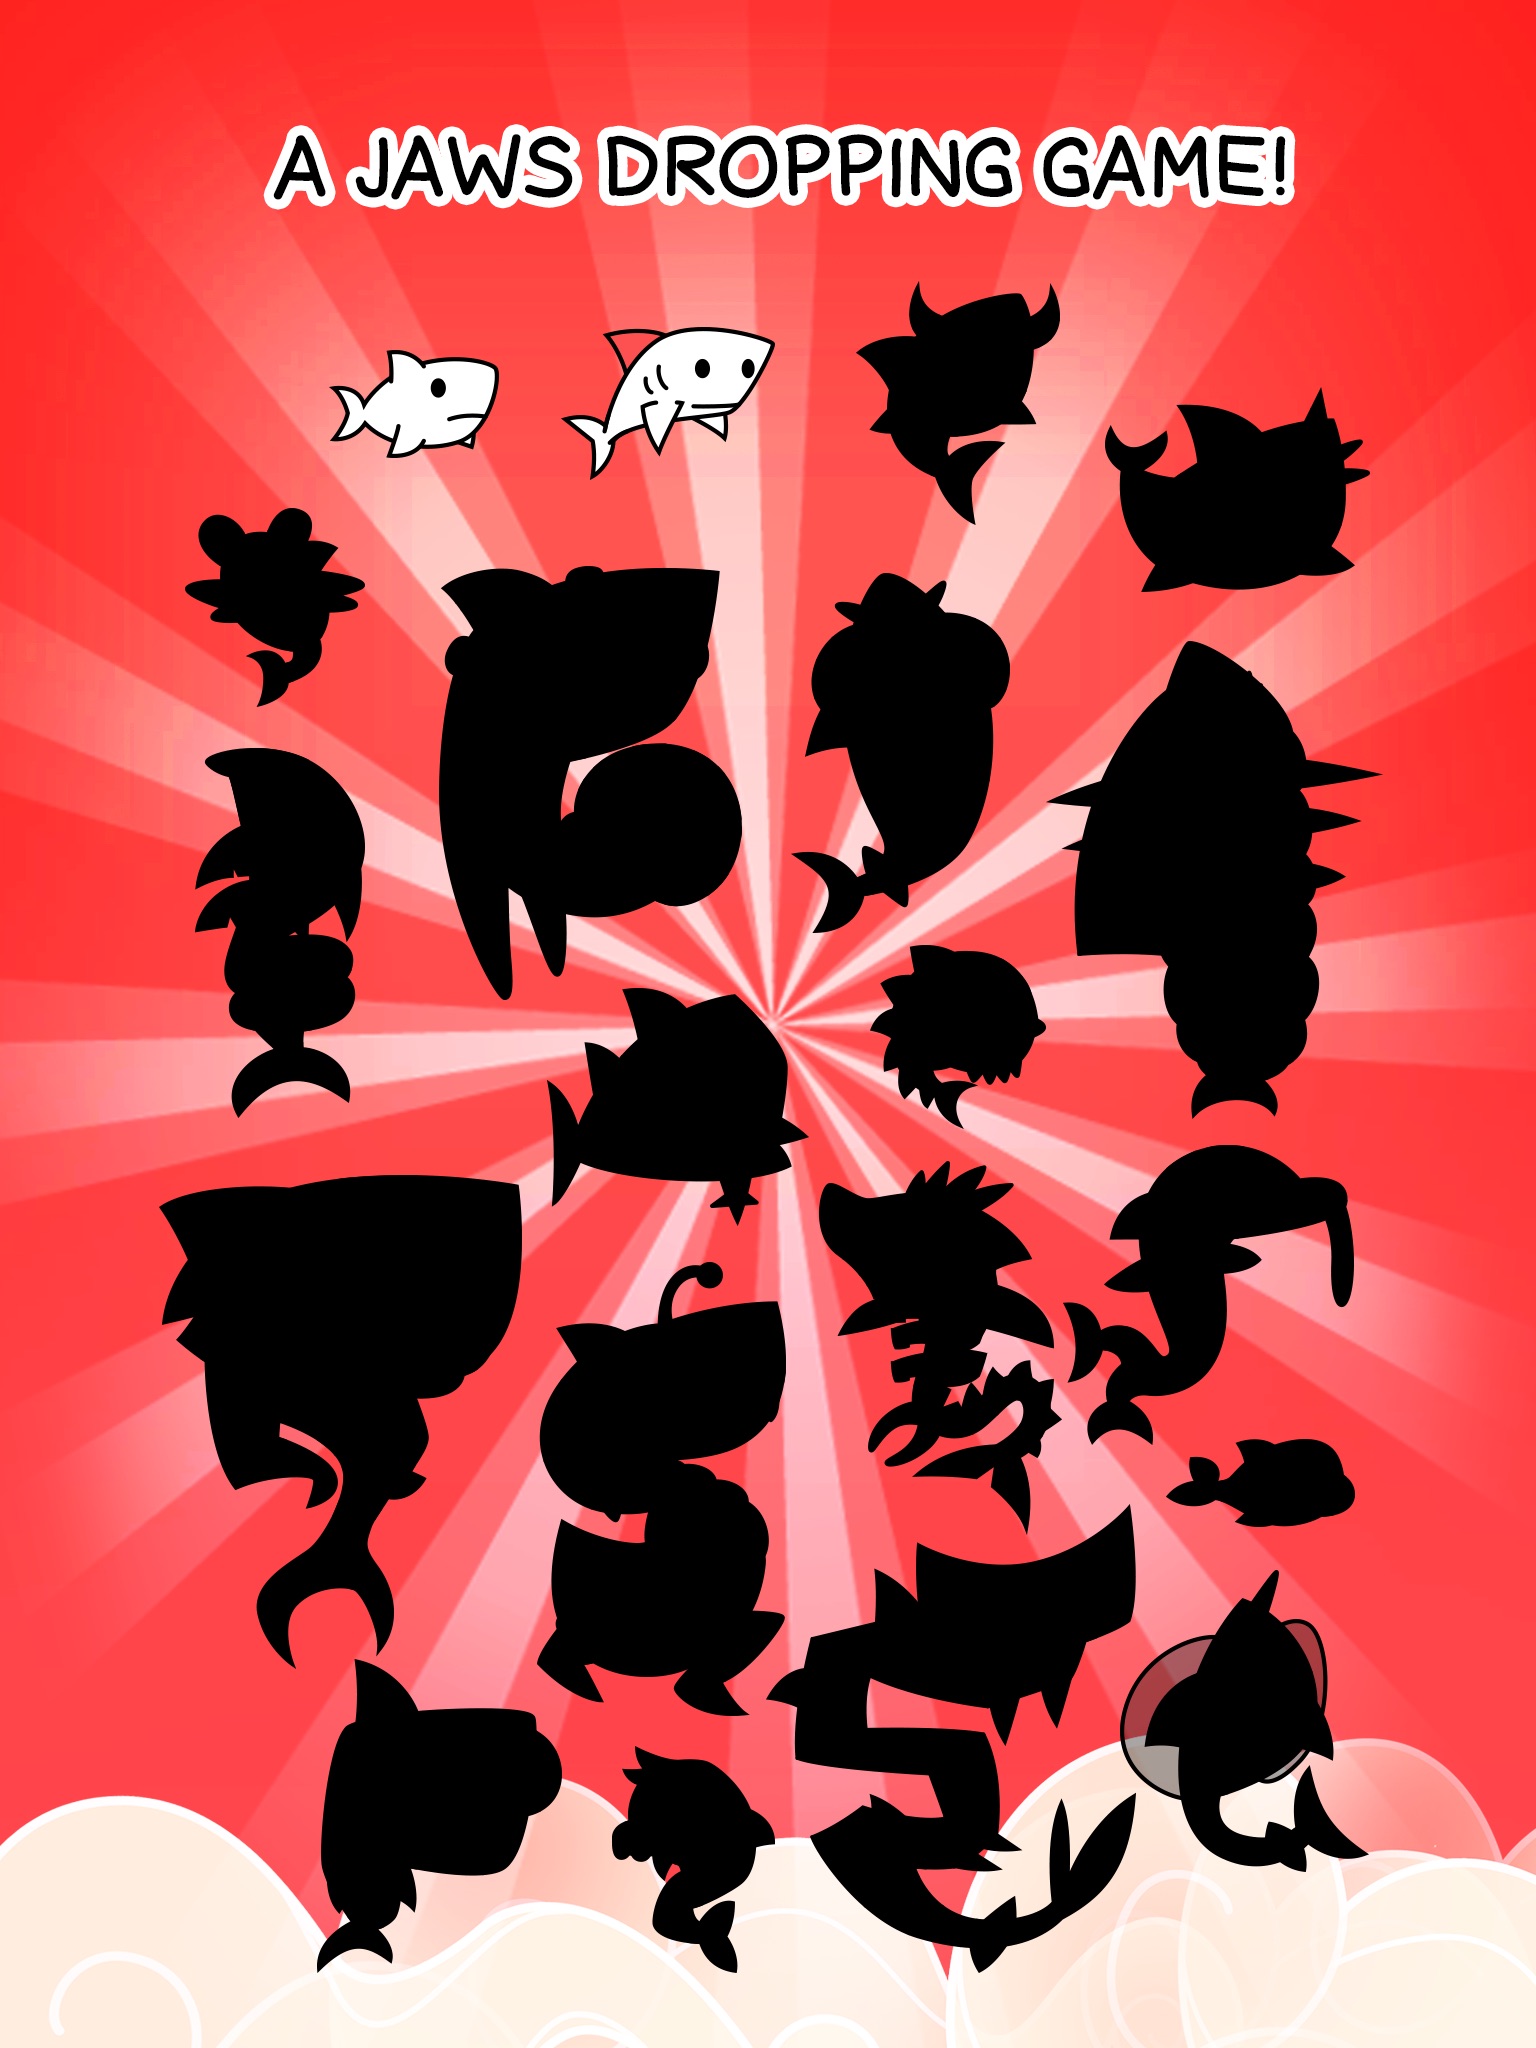 Shark Evolution - Clicker Game screenshot 4